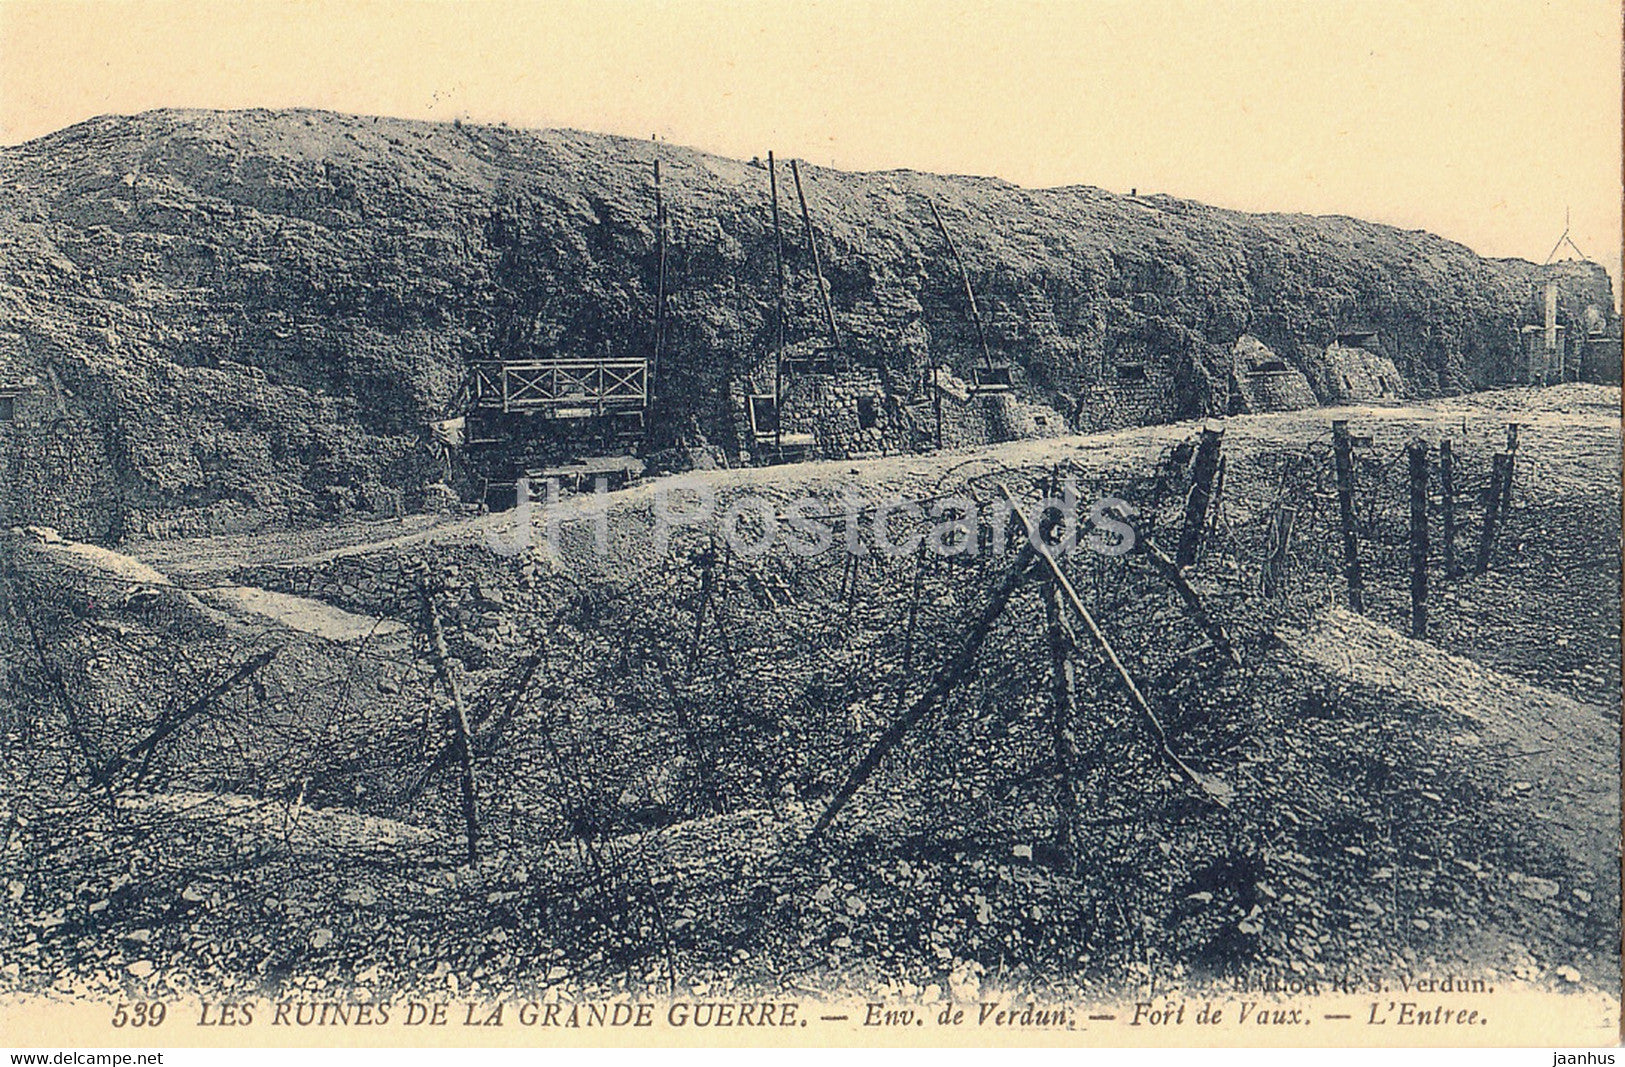 Les Ruines de la Grande Guerre - Env de Verdun - Fort de Vaux - L'Entree military - WWI - old postcard - France - unused - JH Postcards